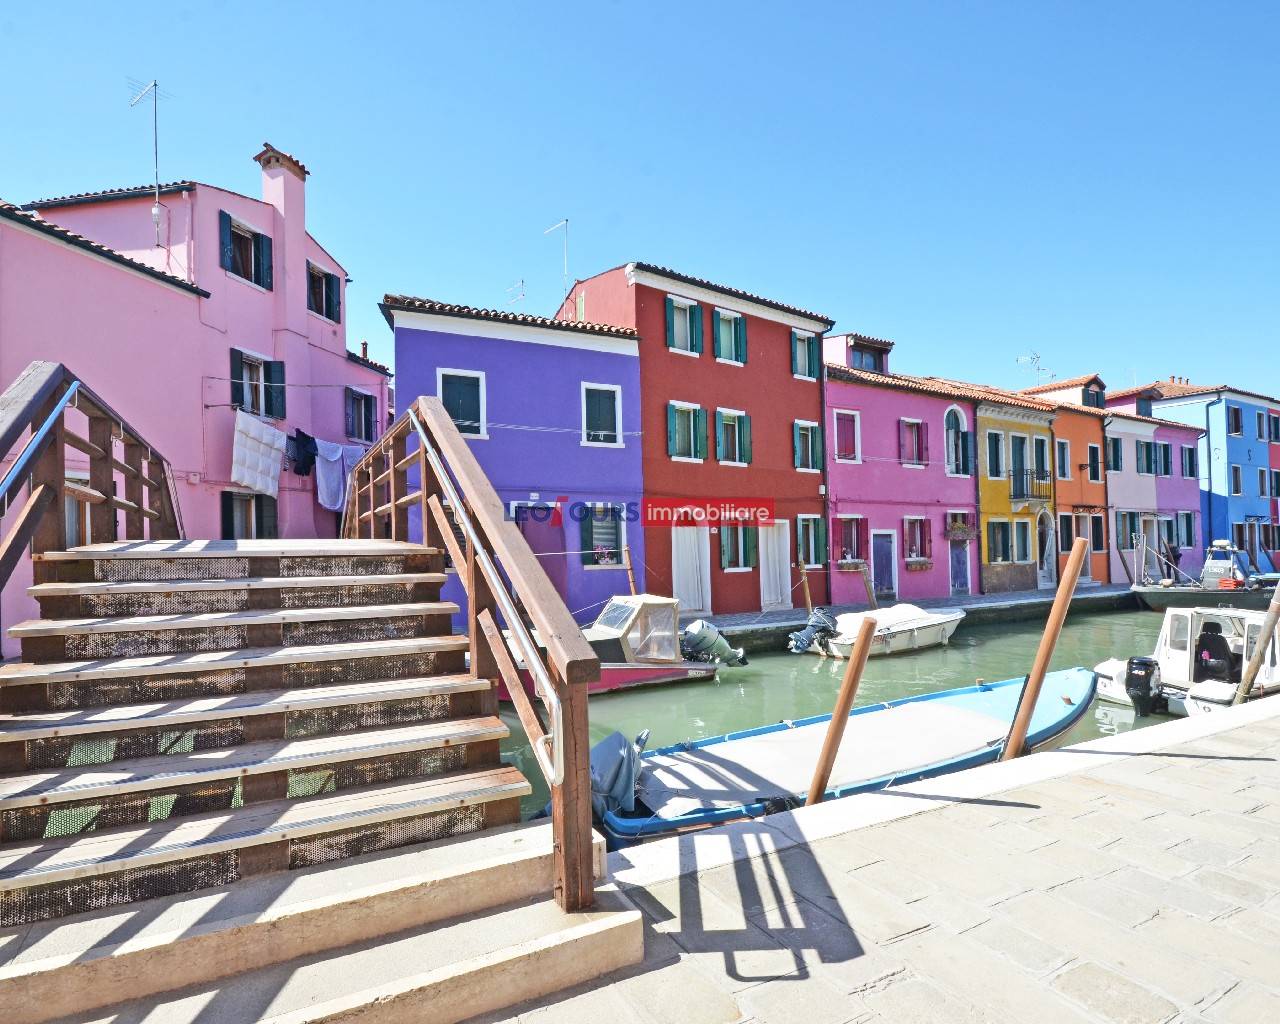 Wunderschönes, komplett renoviertes Reihenhaus in Burano, Venedig